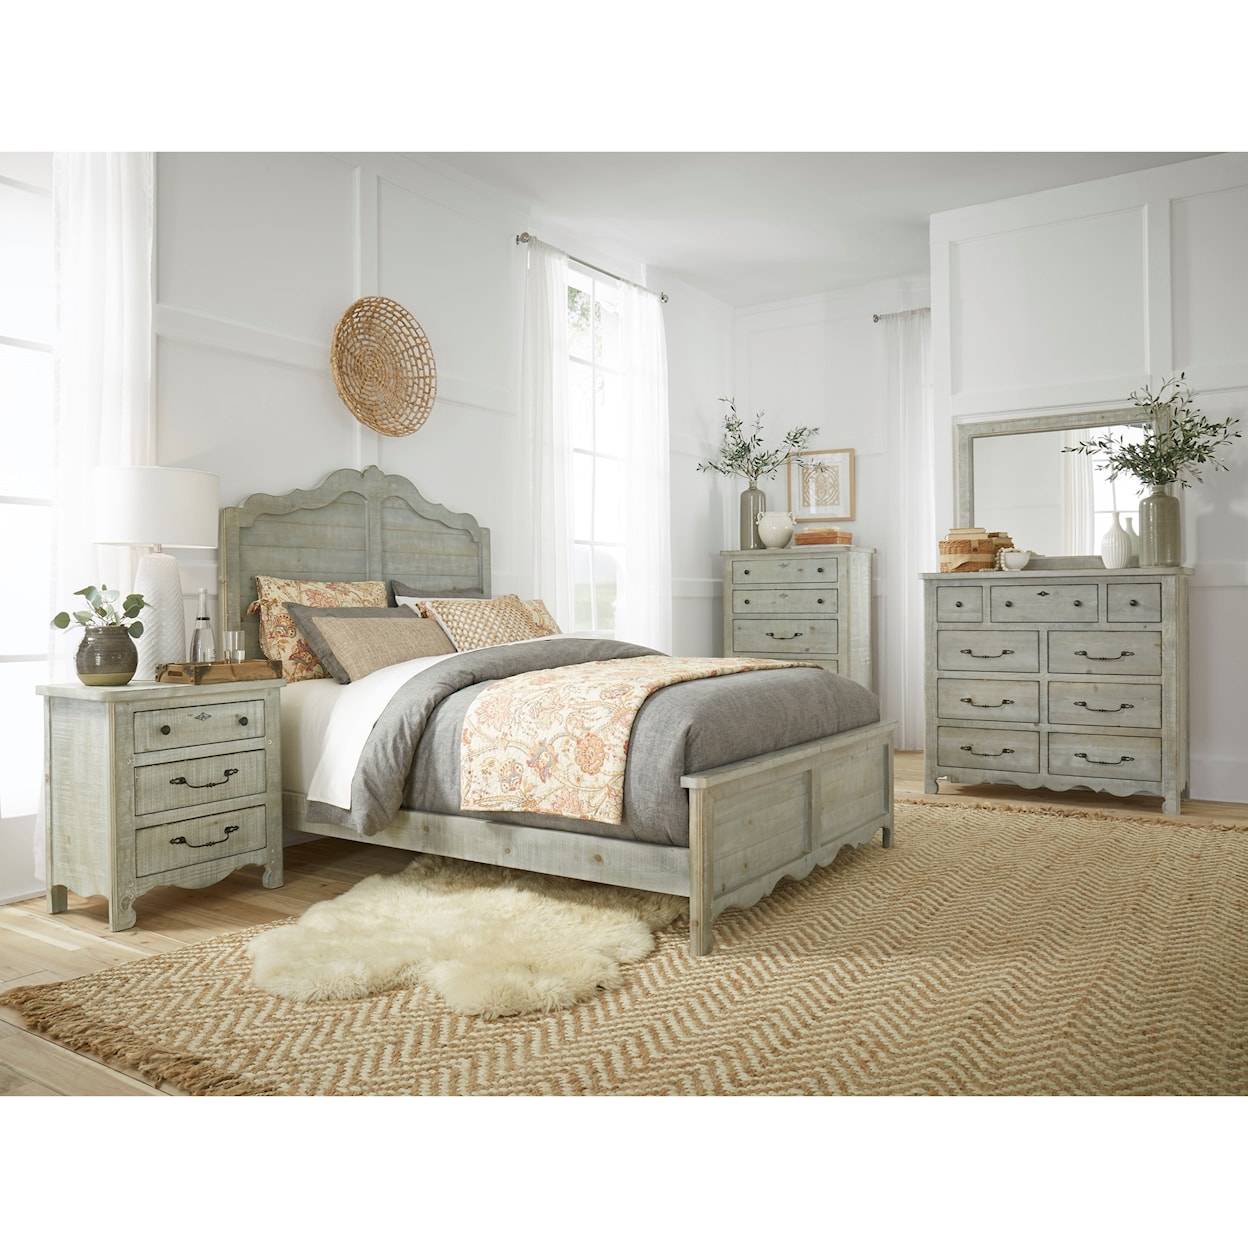 Progressive Furniture Chatsworth Queen Bedroom Group